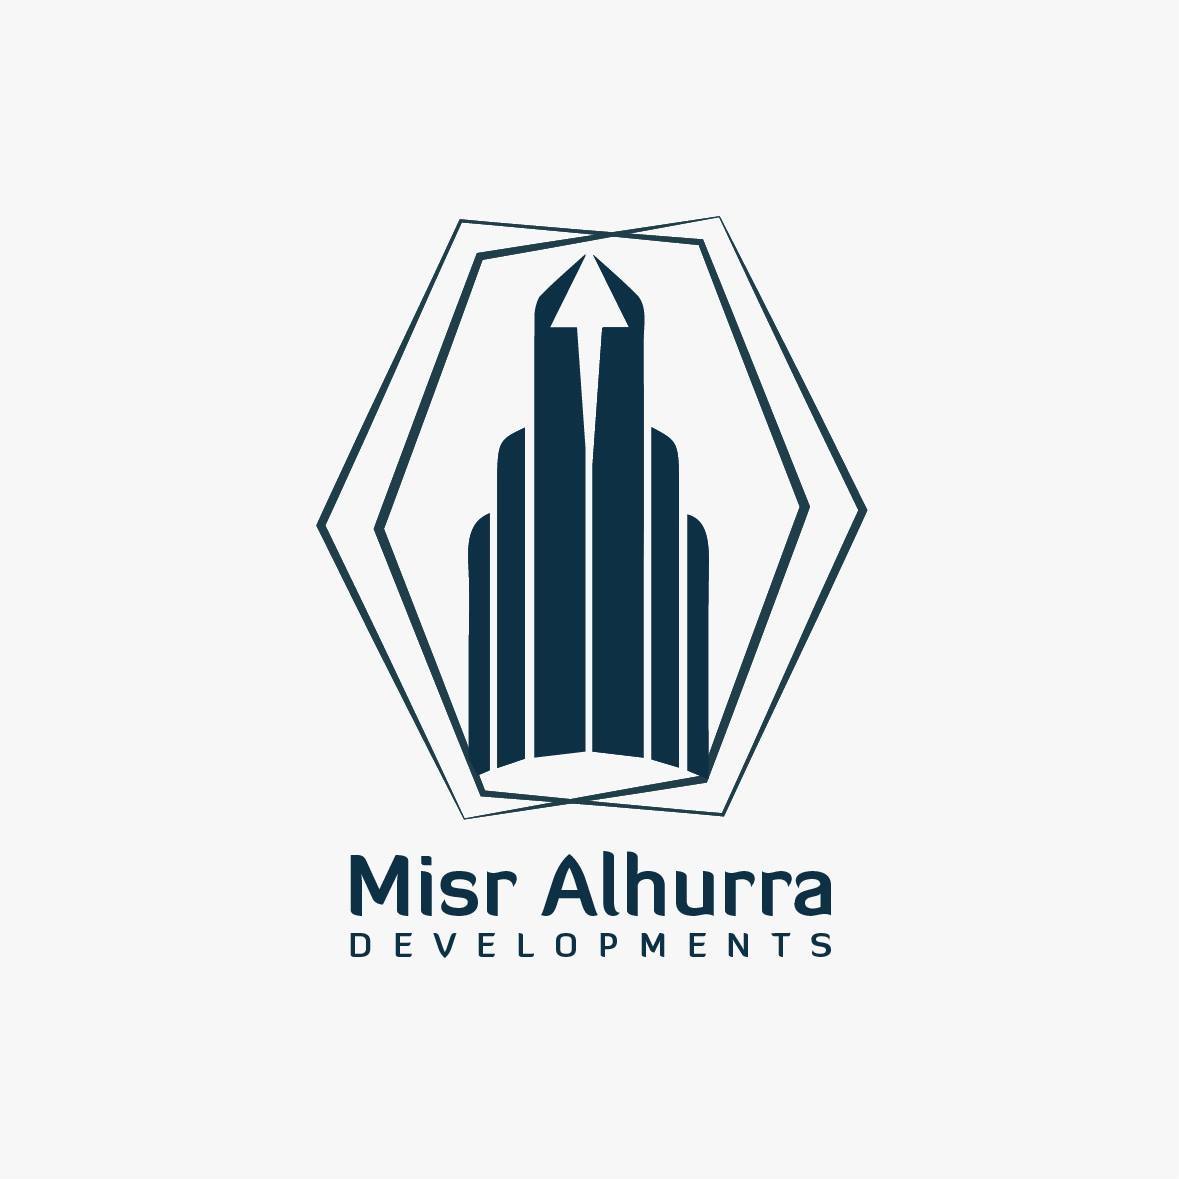 Misr Alhurra Development